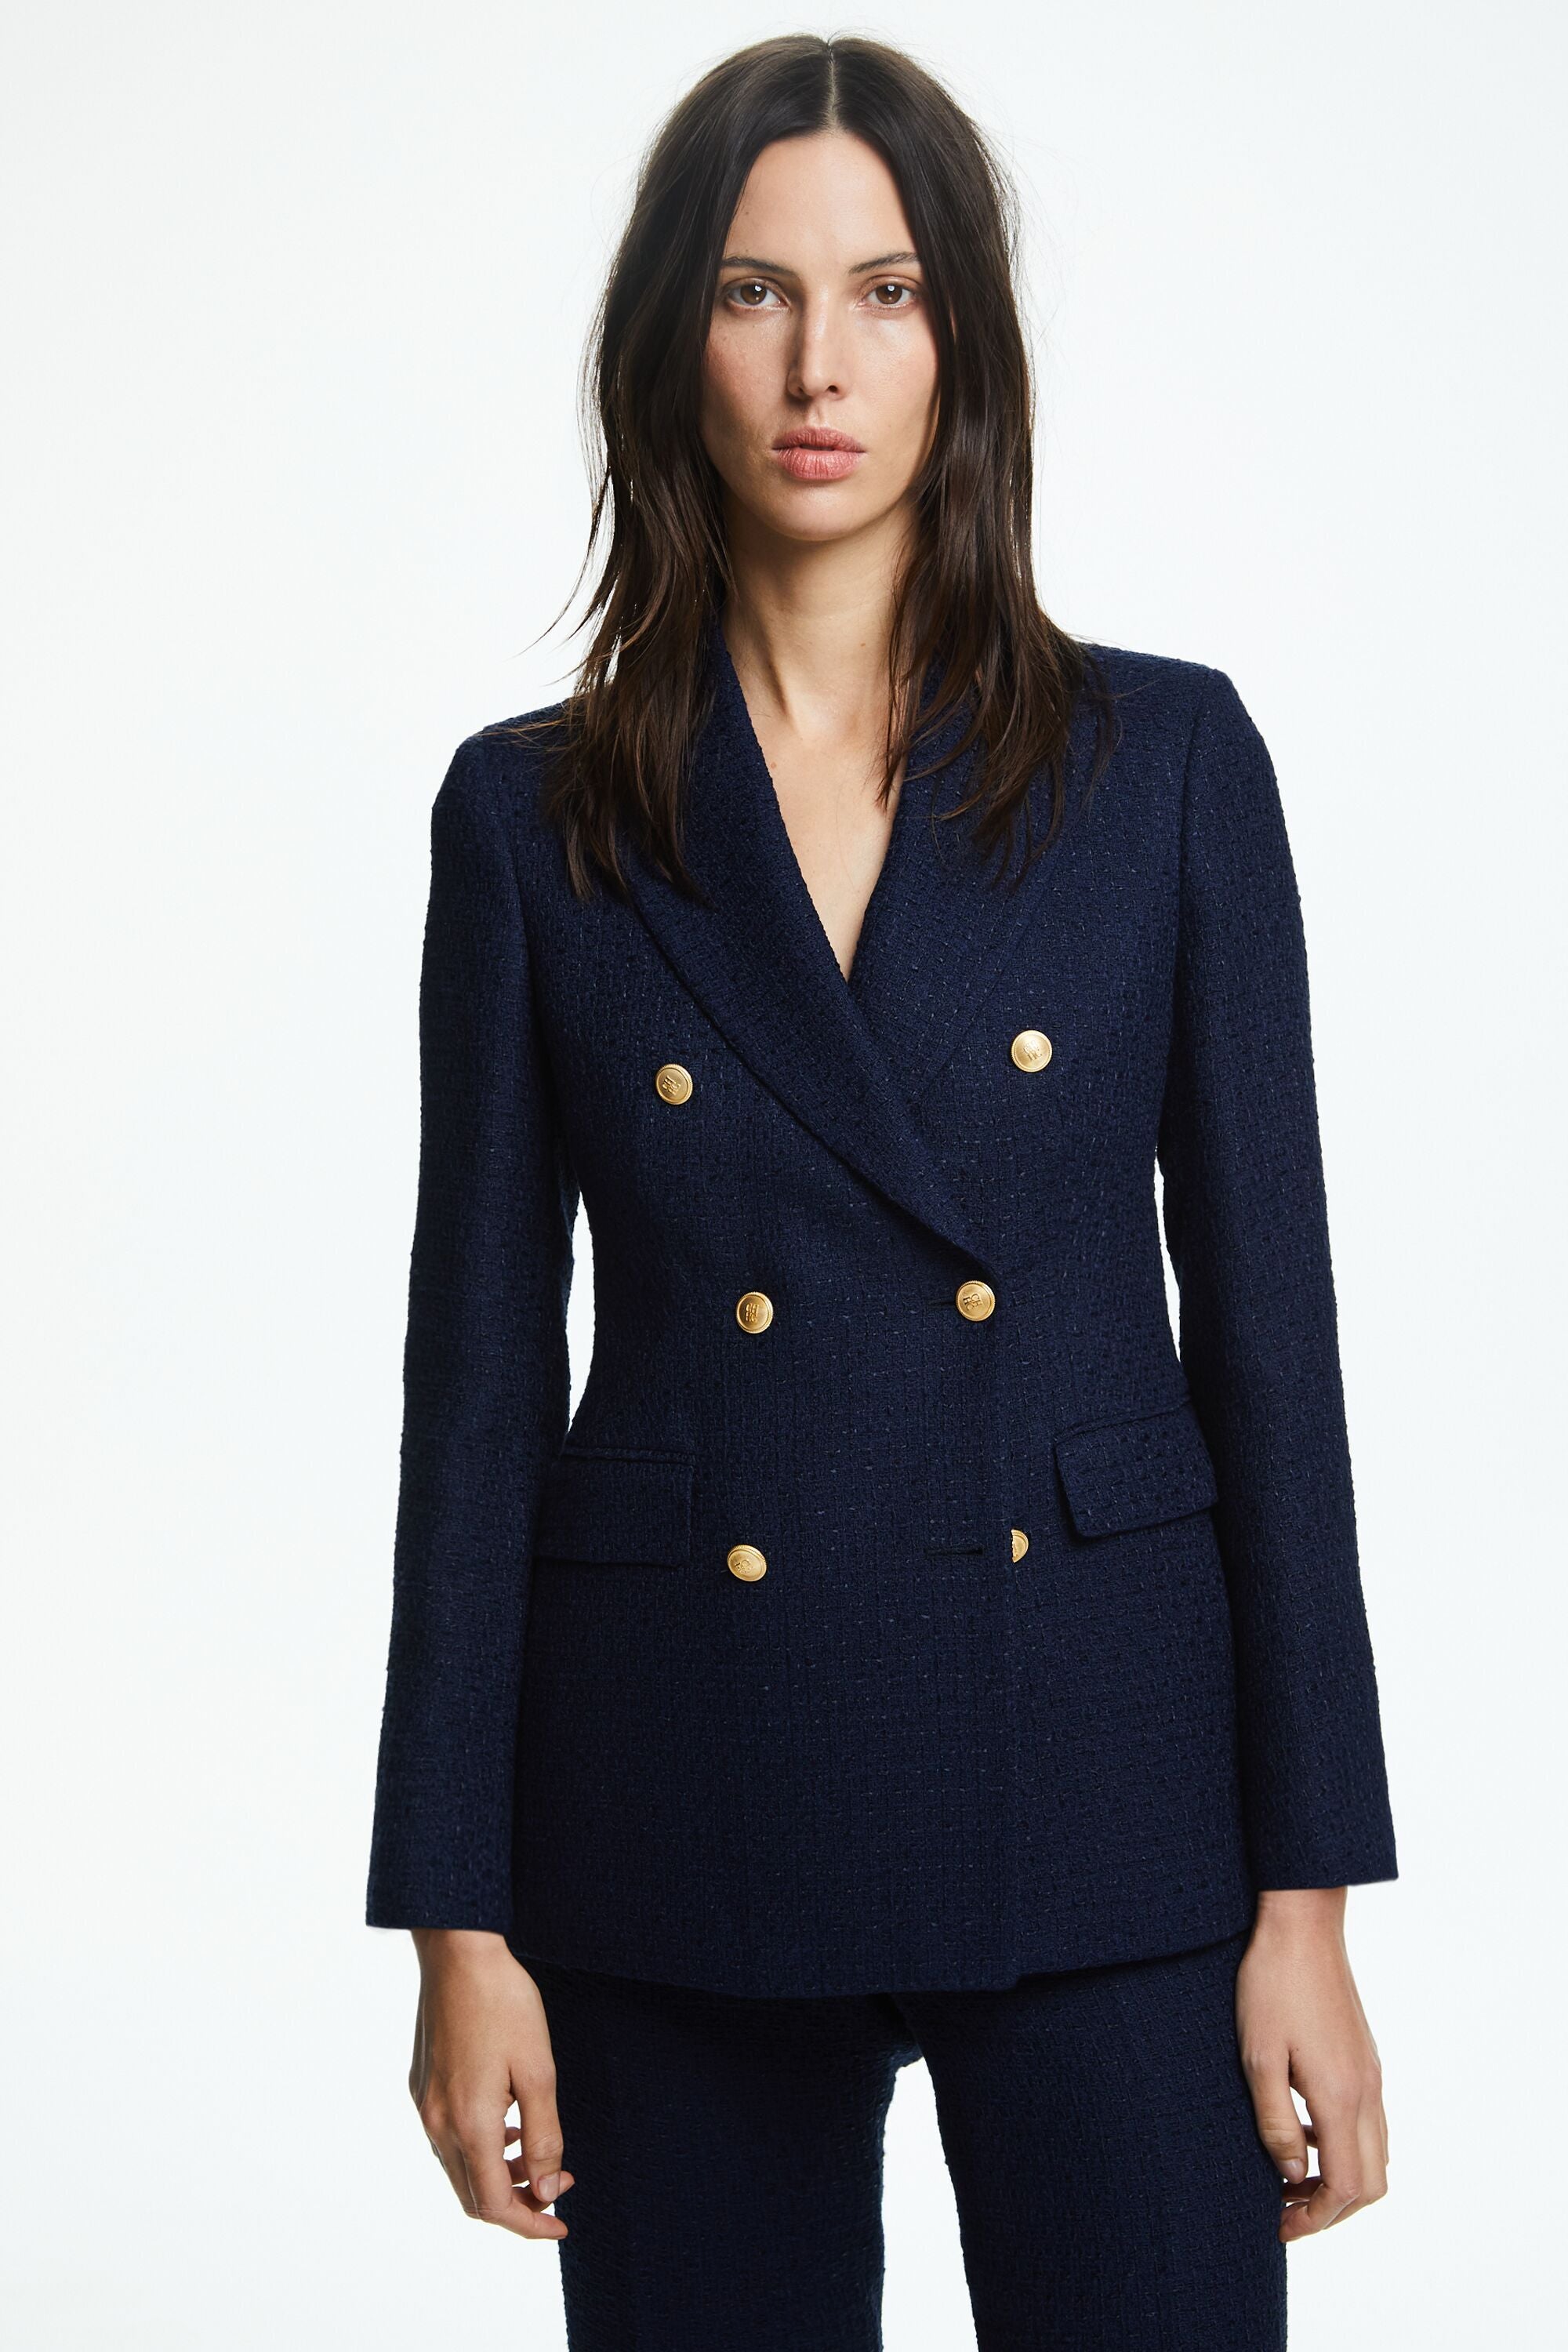 Woven double-breasted tailored jacket navy - CH Carolina Herrera ...